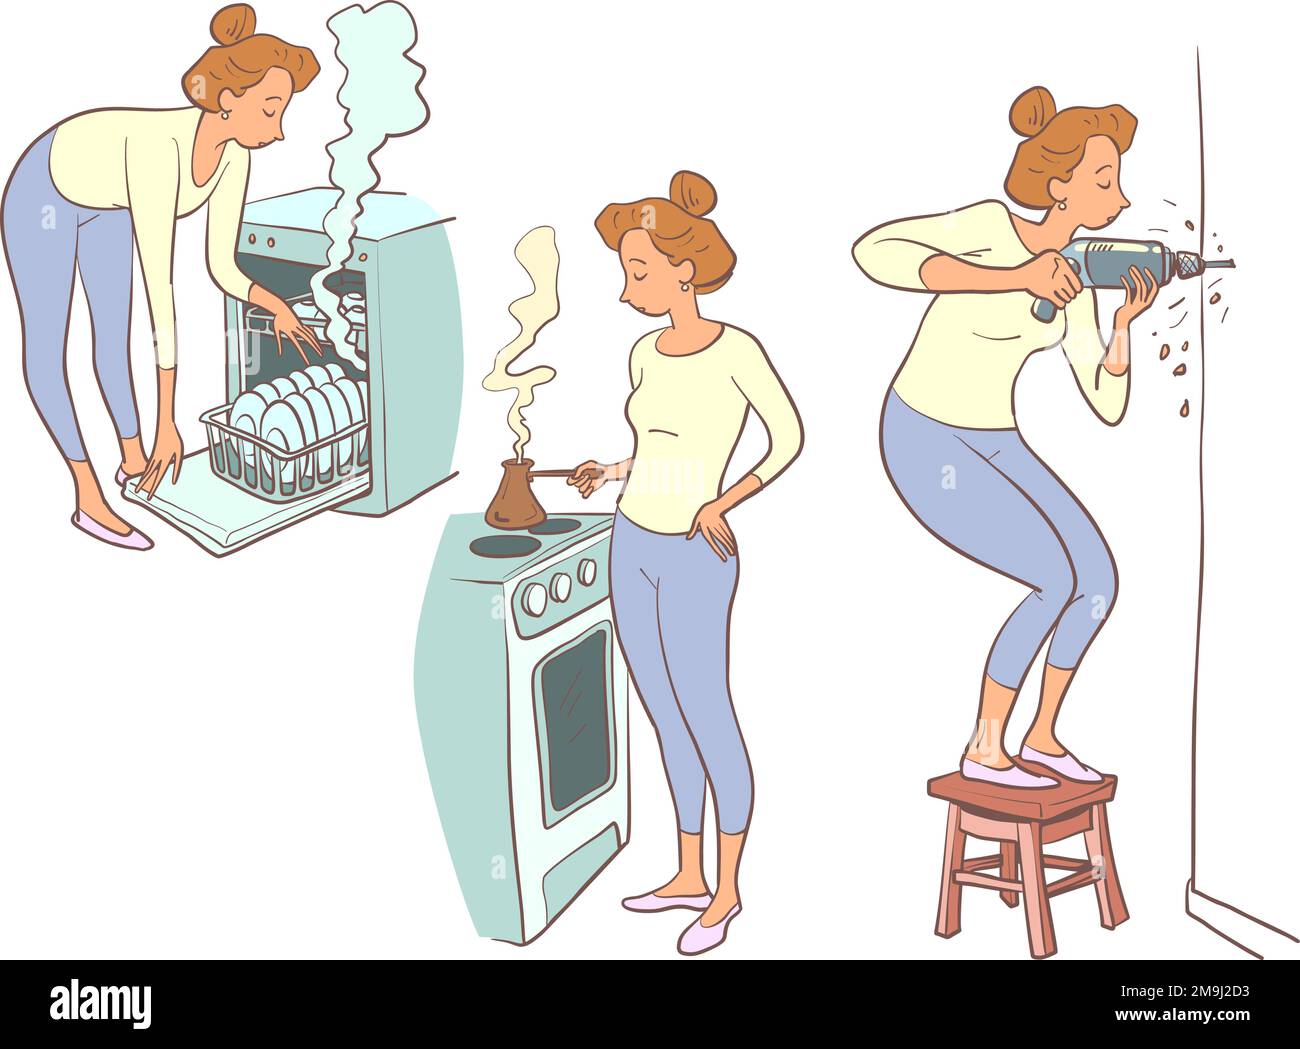 Une fille avec une coupe de cheveux rouge prépare le café et le petit-déjeuner, utilise un lave-vaisselle et fore un mur avec une perceuse. La routine à la maison d'une femme qui est à la maison Illustration de Vecteur